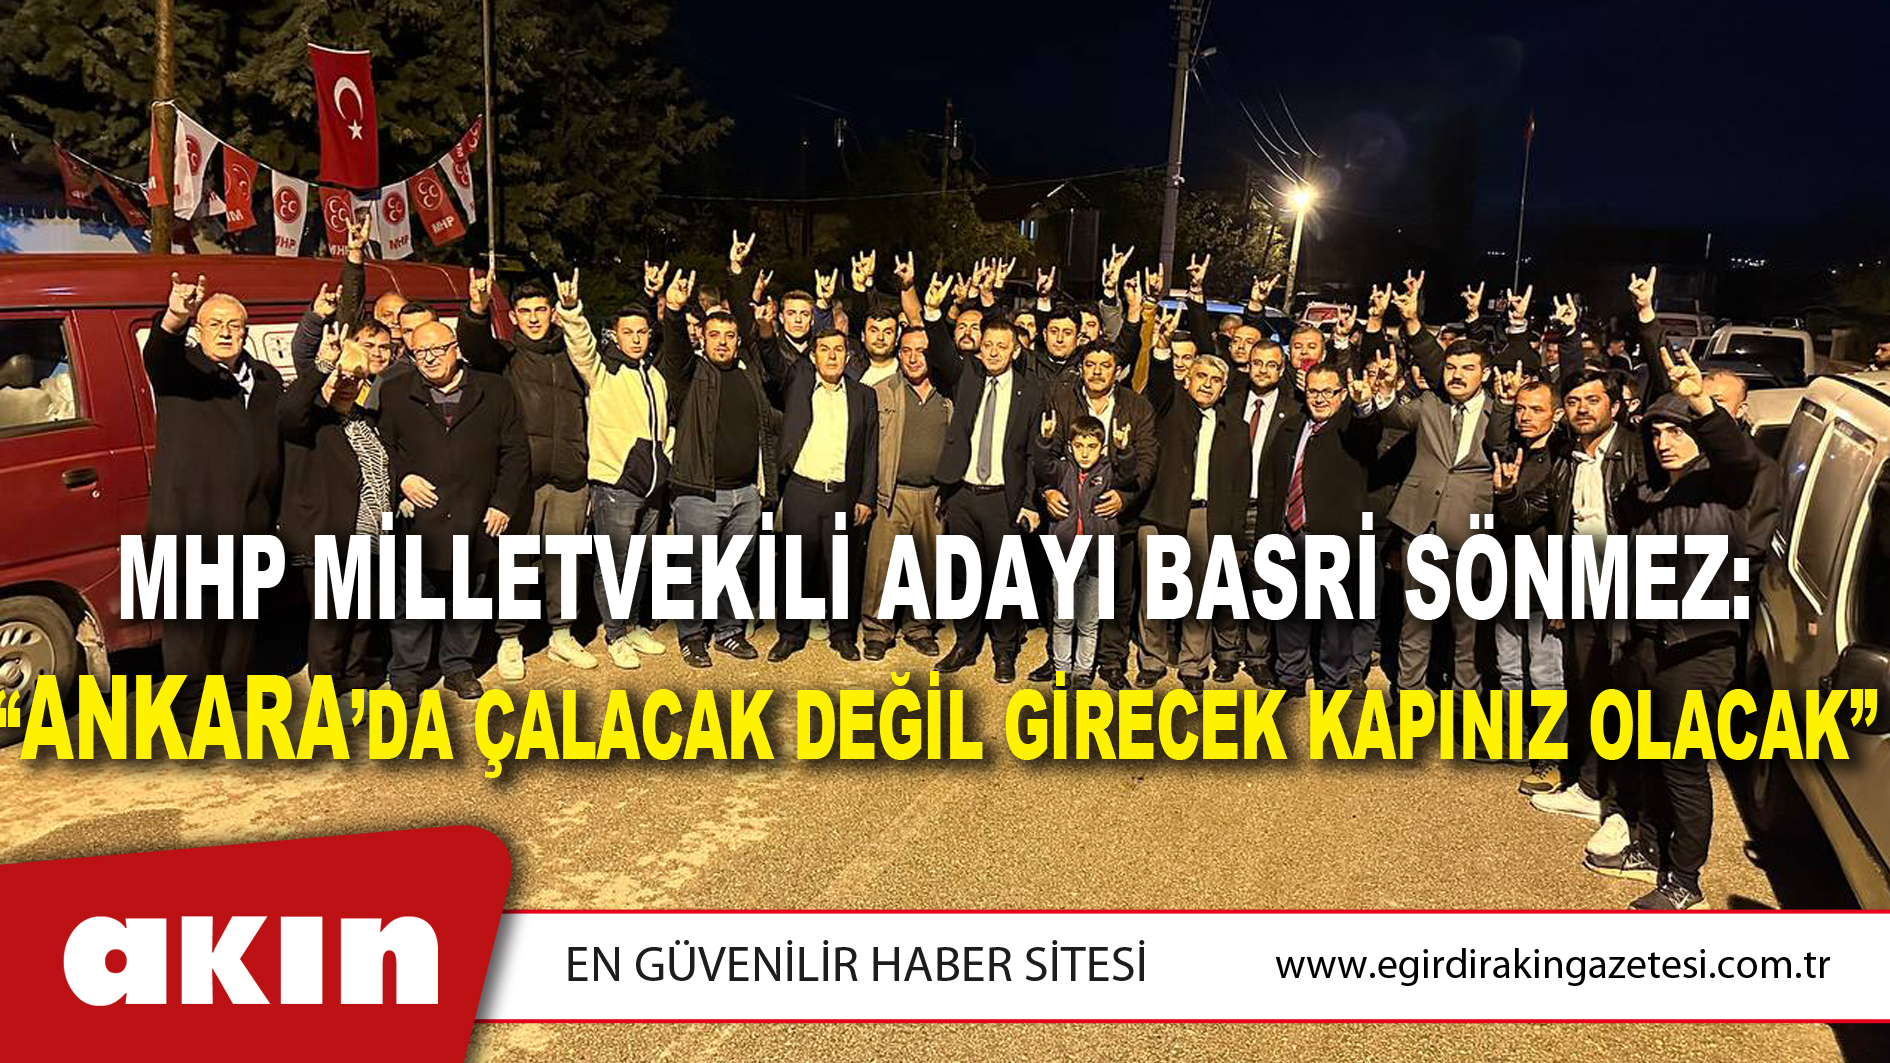 MHP Milletvekili Adayı Basri Sönmez: “Ankara’da Çalacak Değil Girecek Kapınız Olacak”